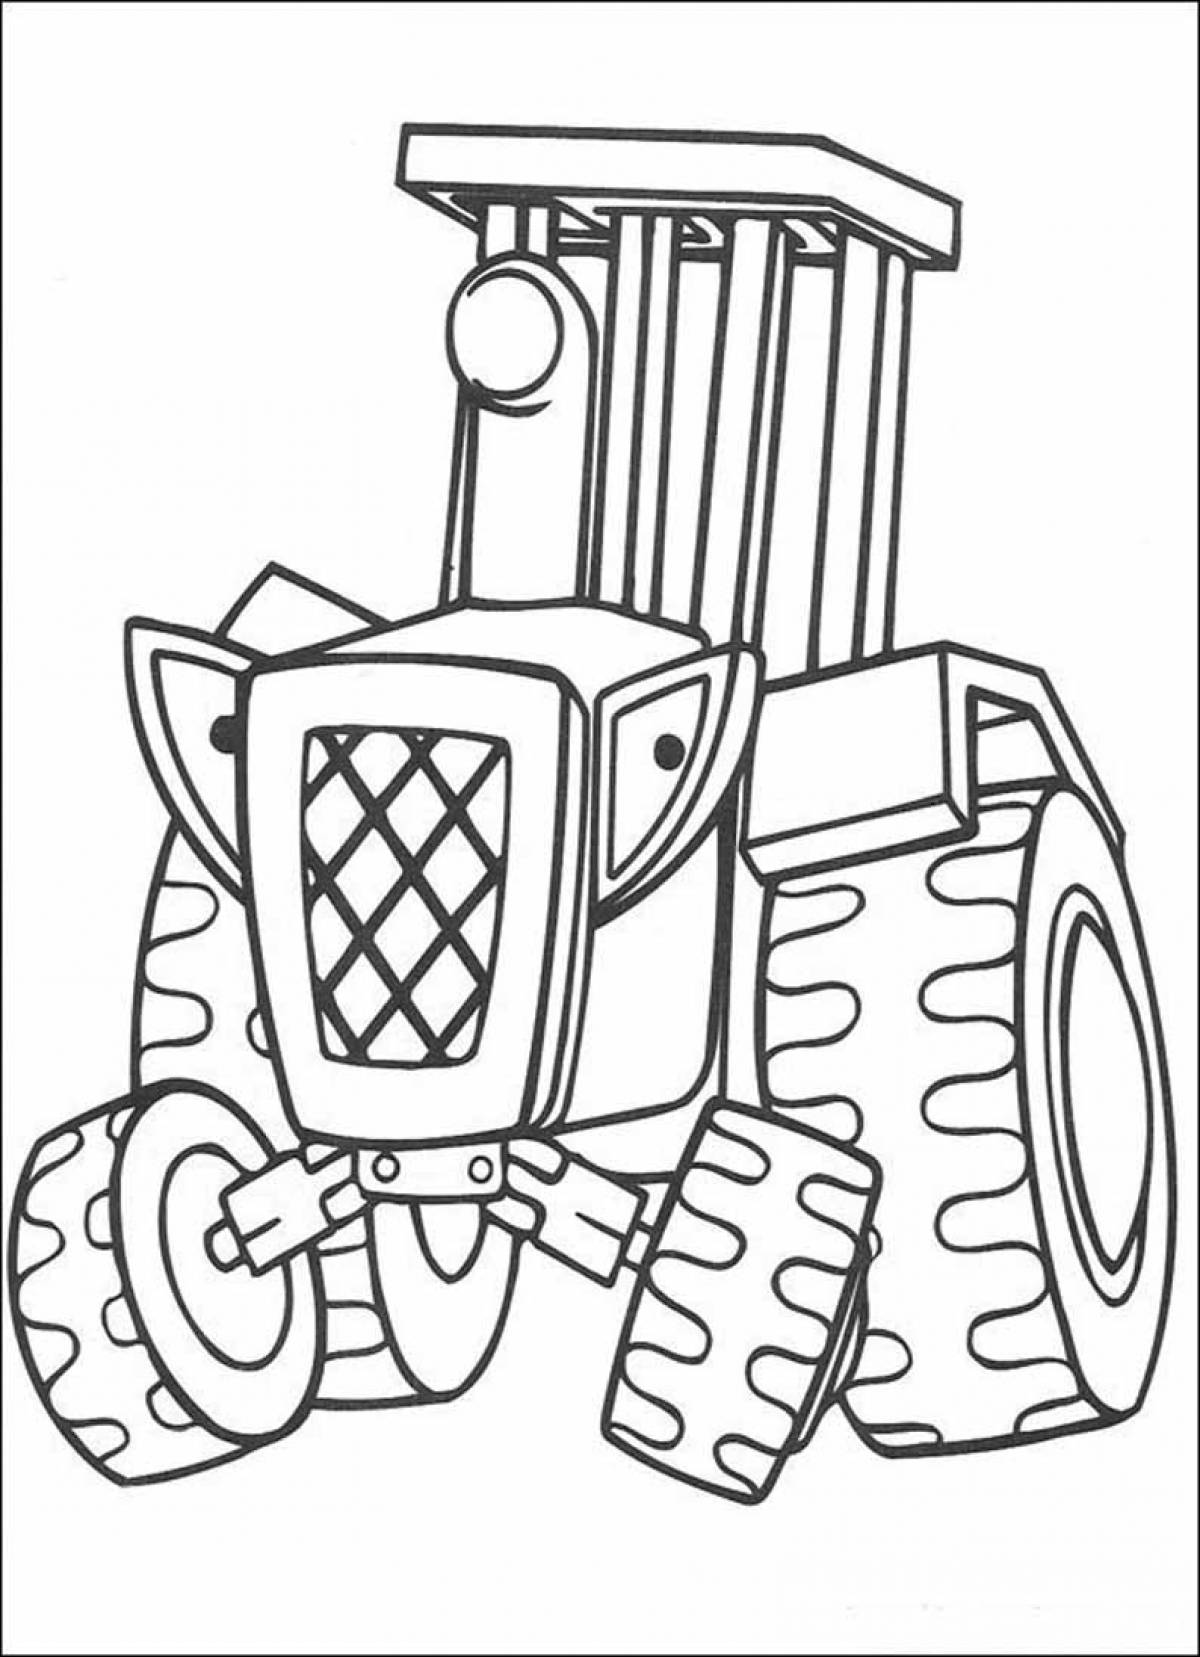 Трактор раскраска для детей 6 7 лет. Боб Строитель раскраска. Раскраска трактор. Трактор для раскрашивания детям. Раскраска для малышей. Трактор.